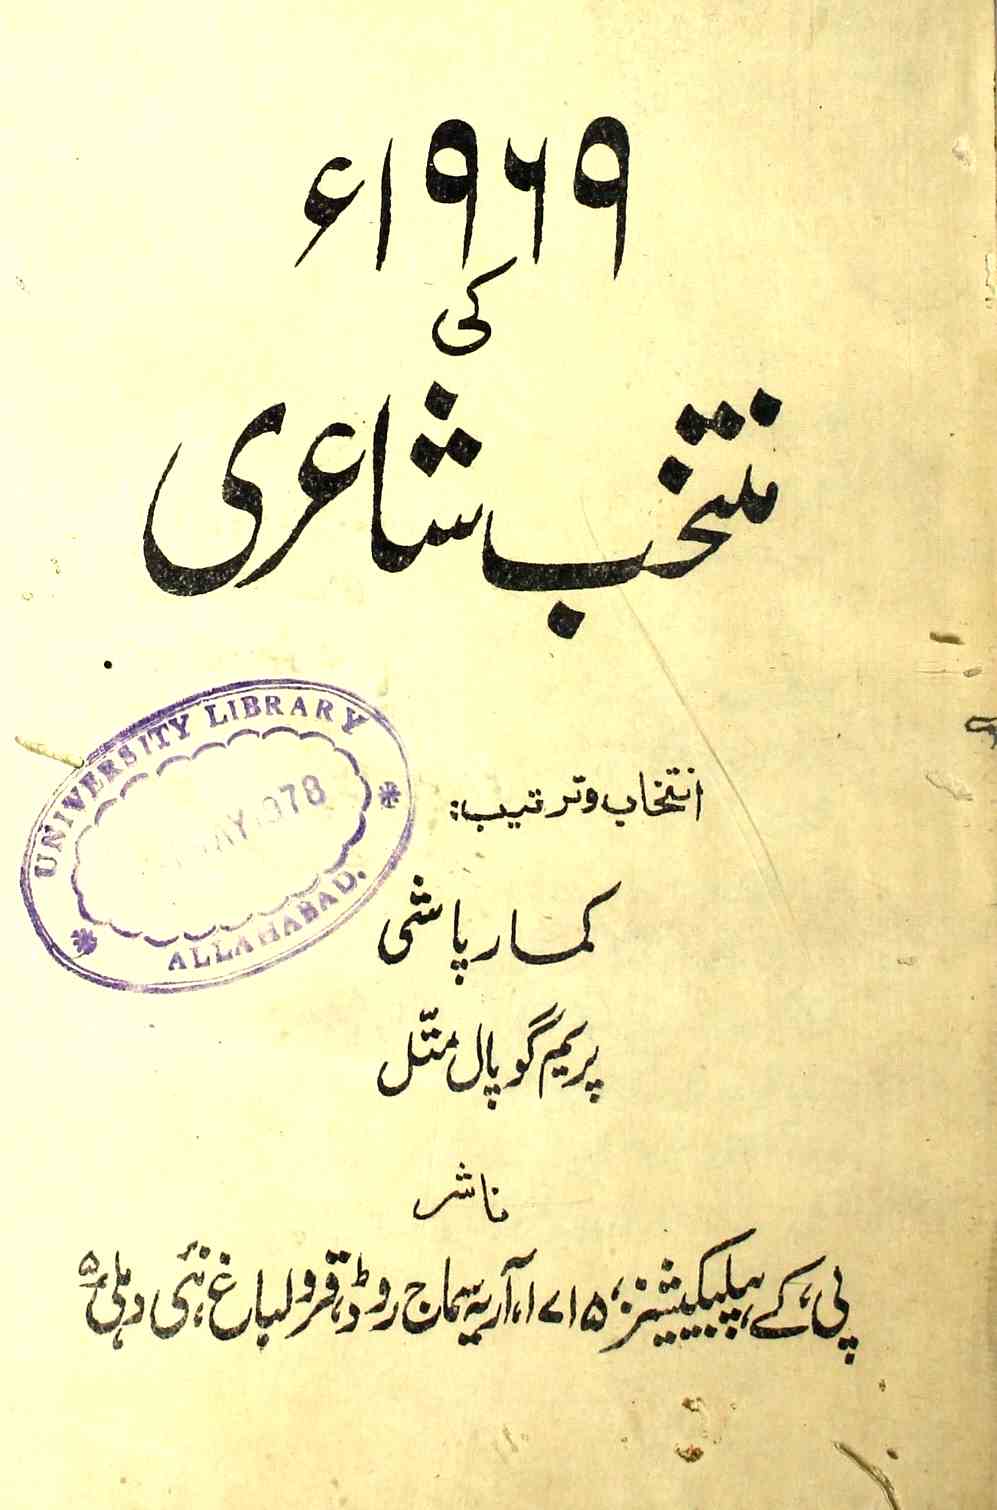 1969 Ki Muntakhab Shayeri